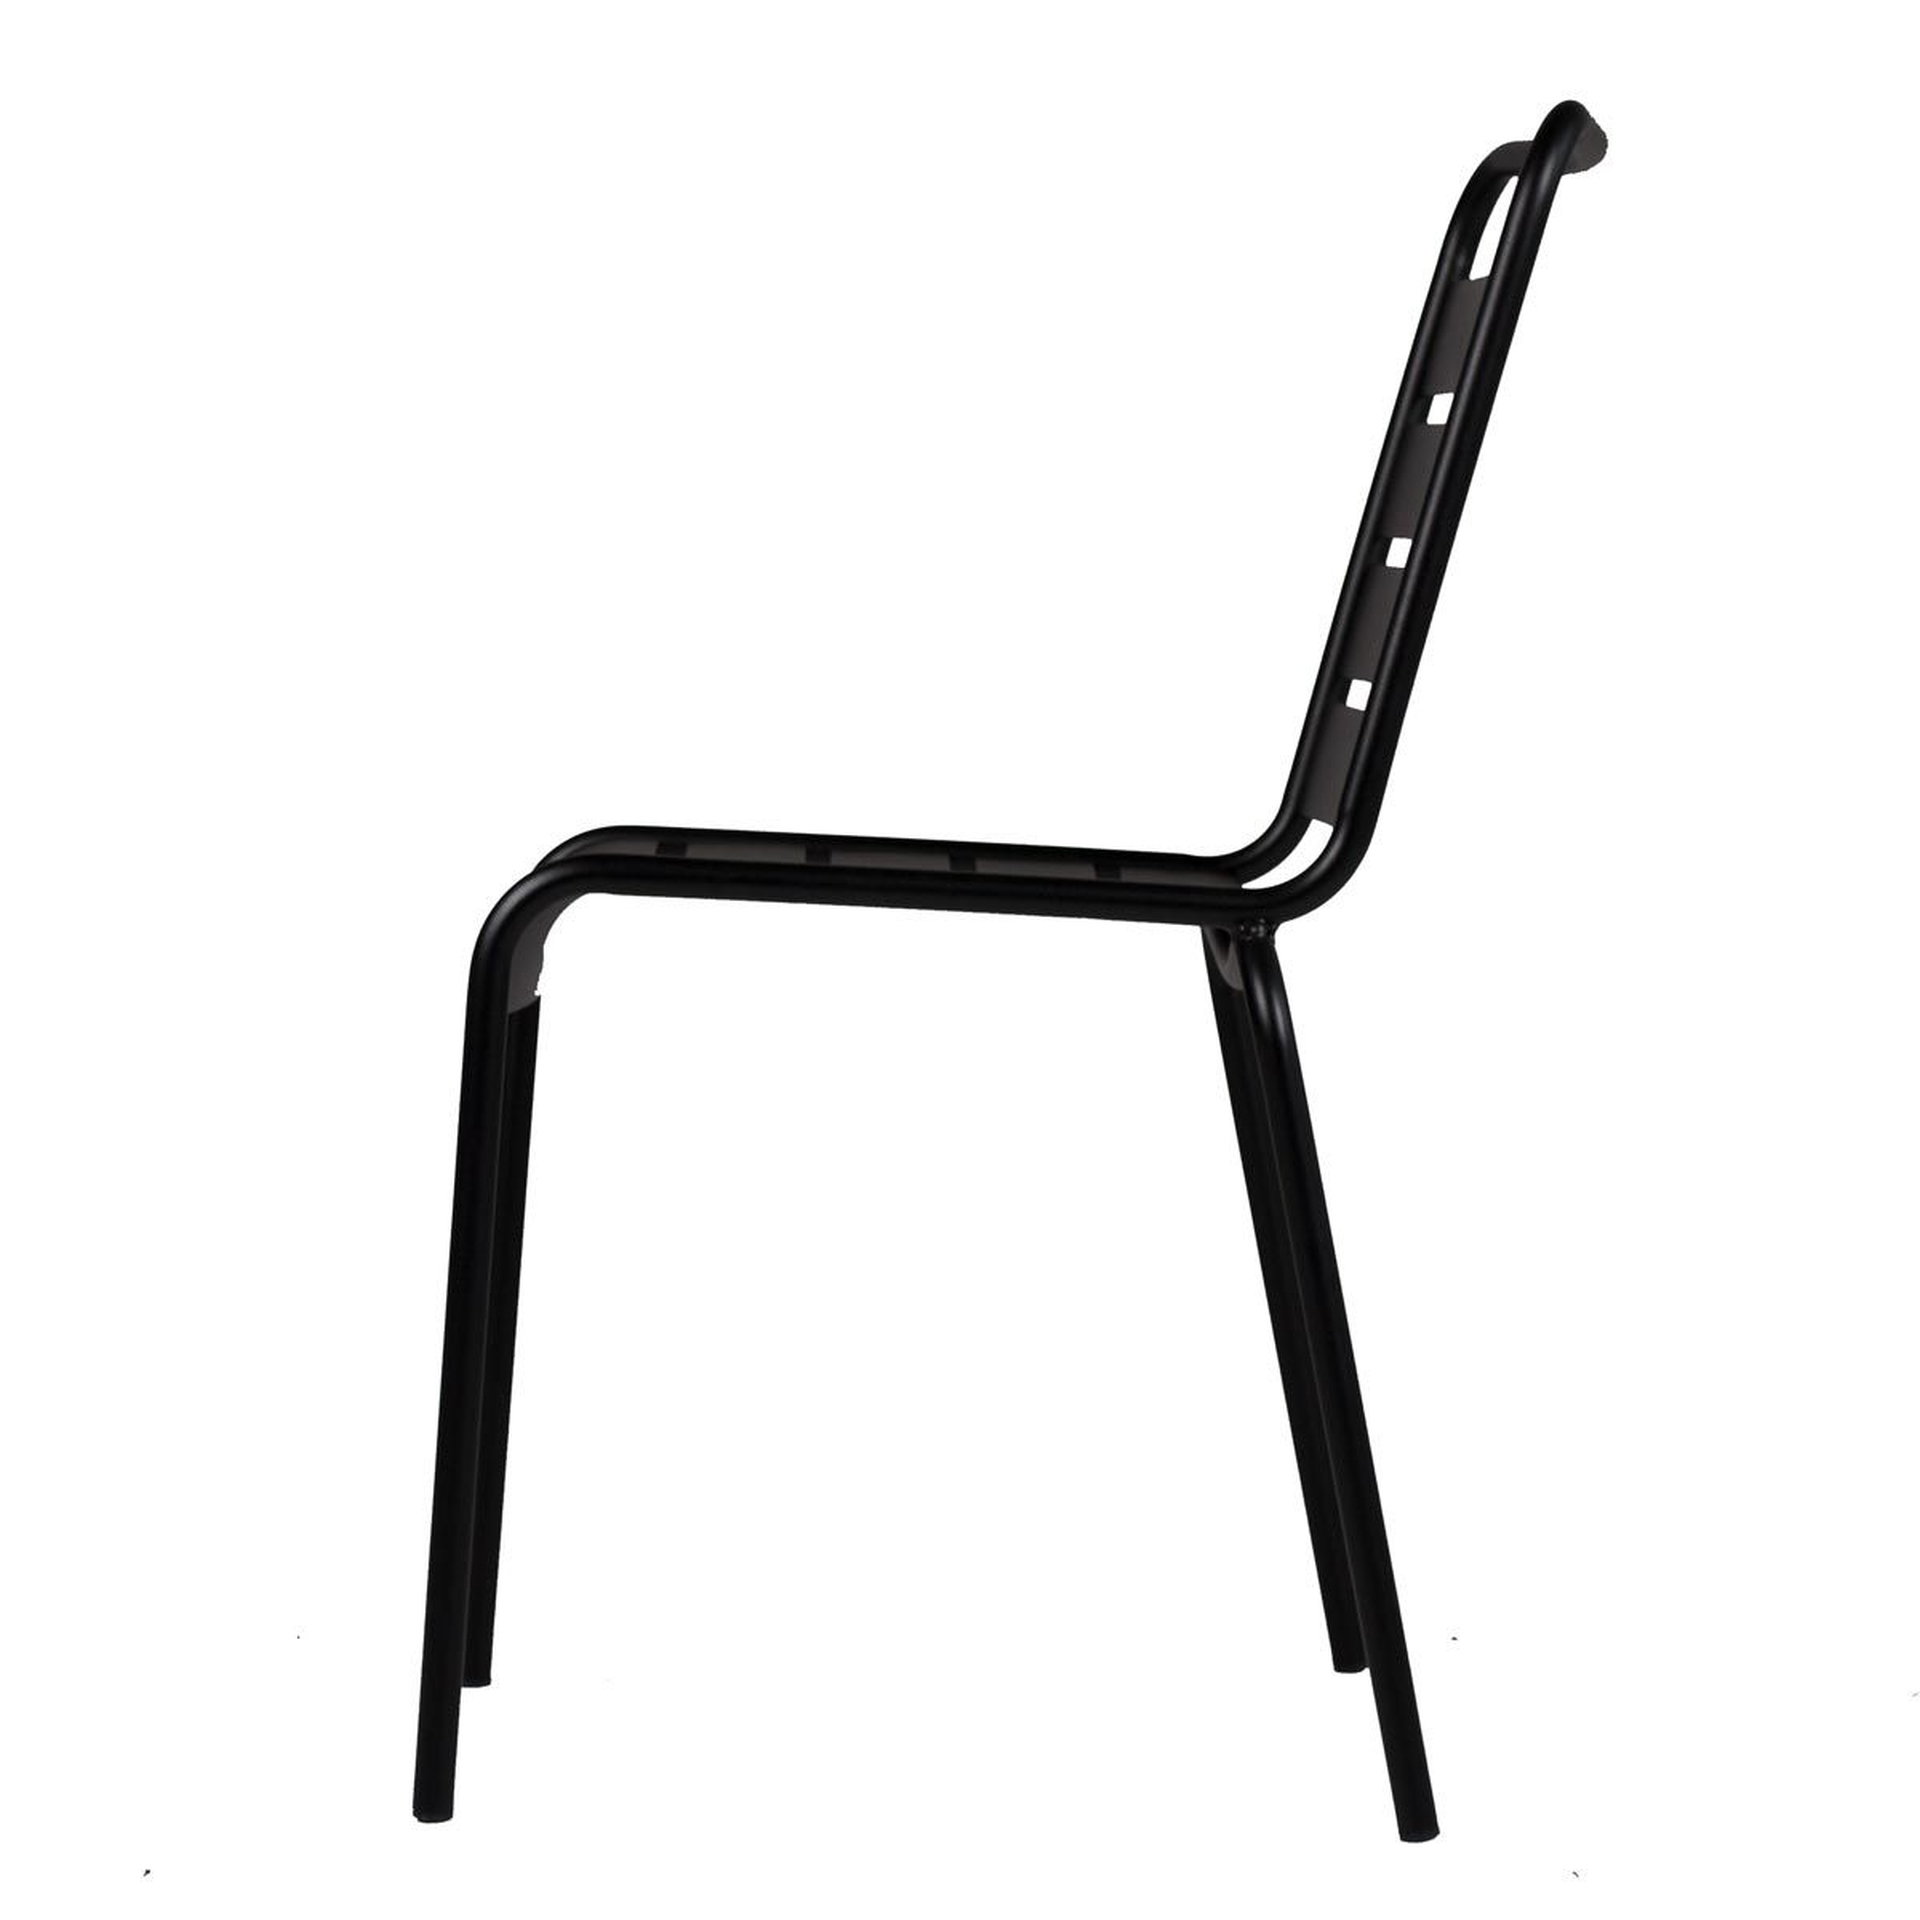 Der moderne Stapelstuhl Mya wurde aus Aluminium gefertigt und hat einen schwarzen Farbton. Designet wurde der Stuhl von der Marke Jan Kurtz.